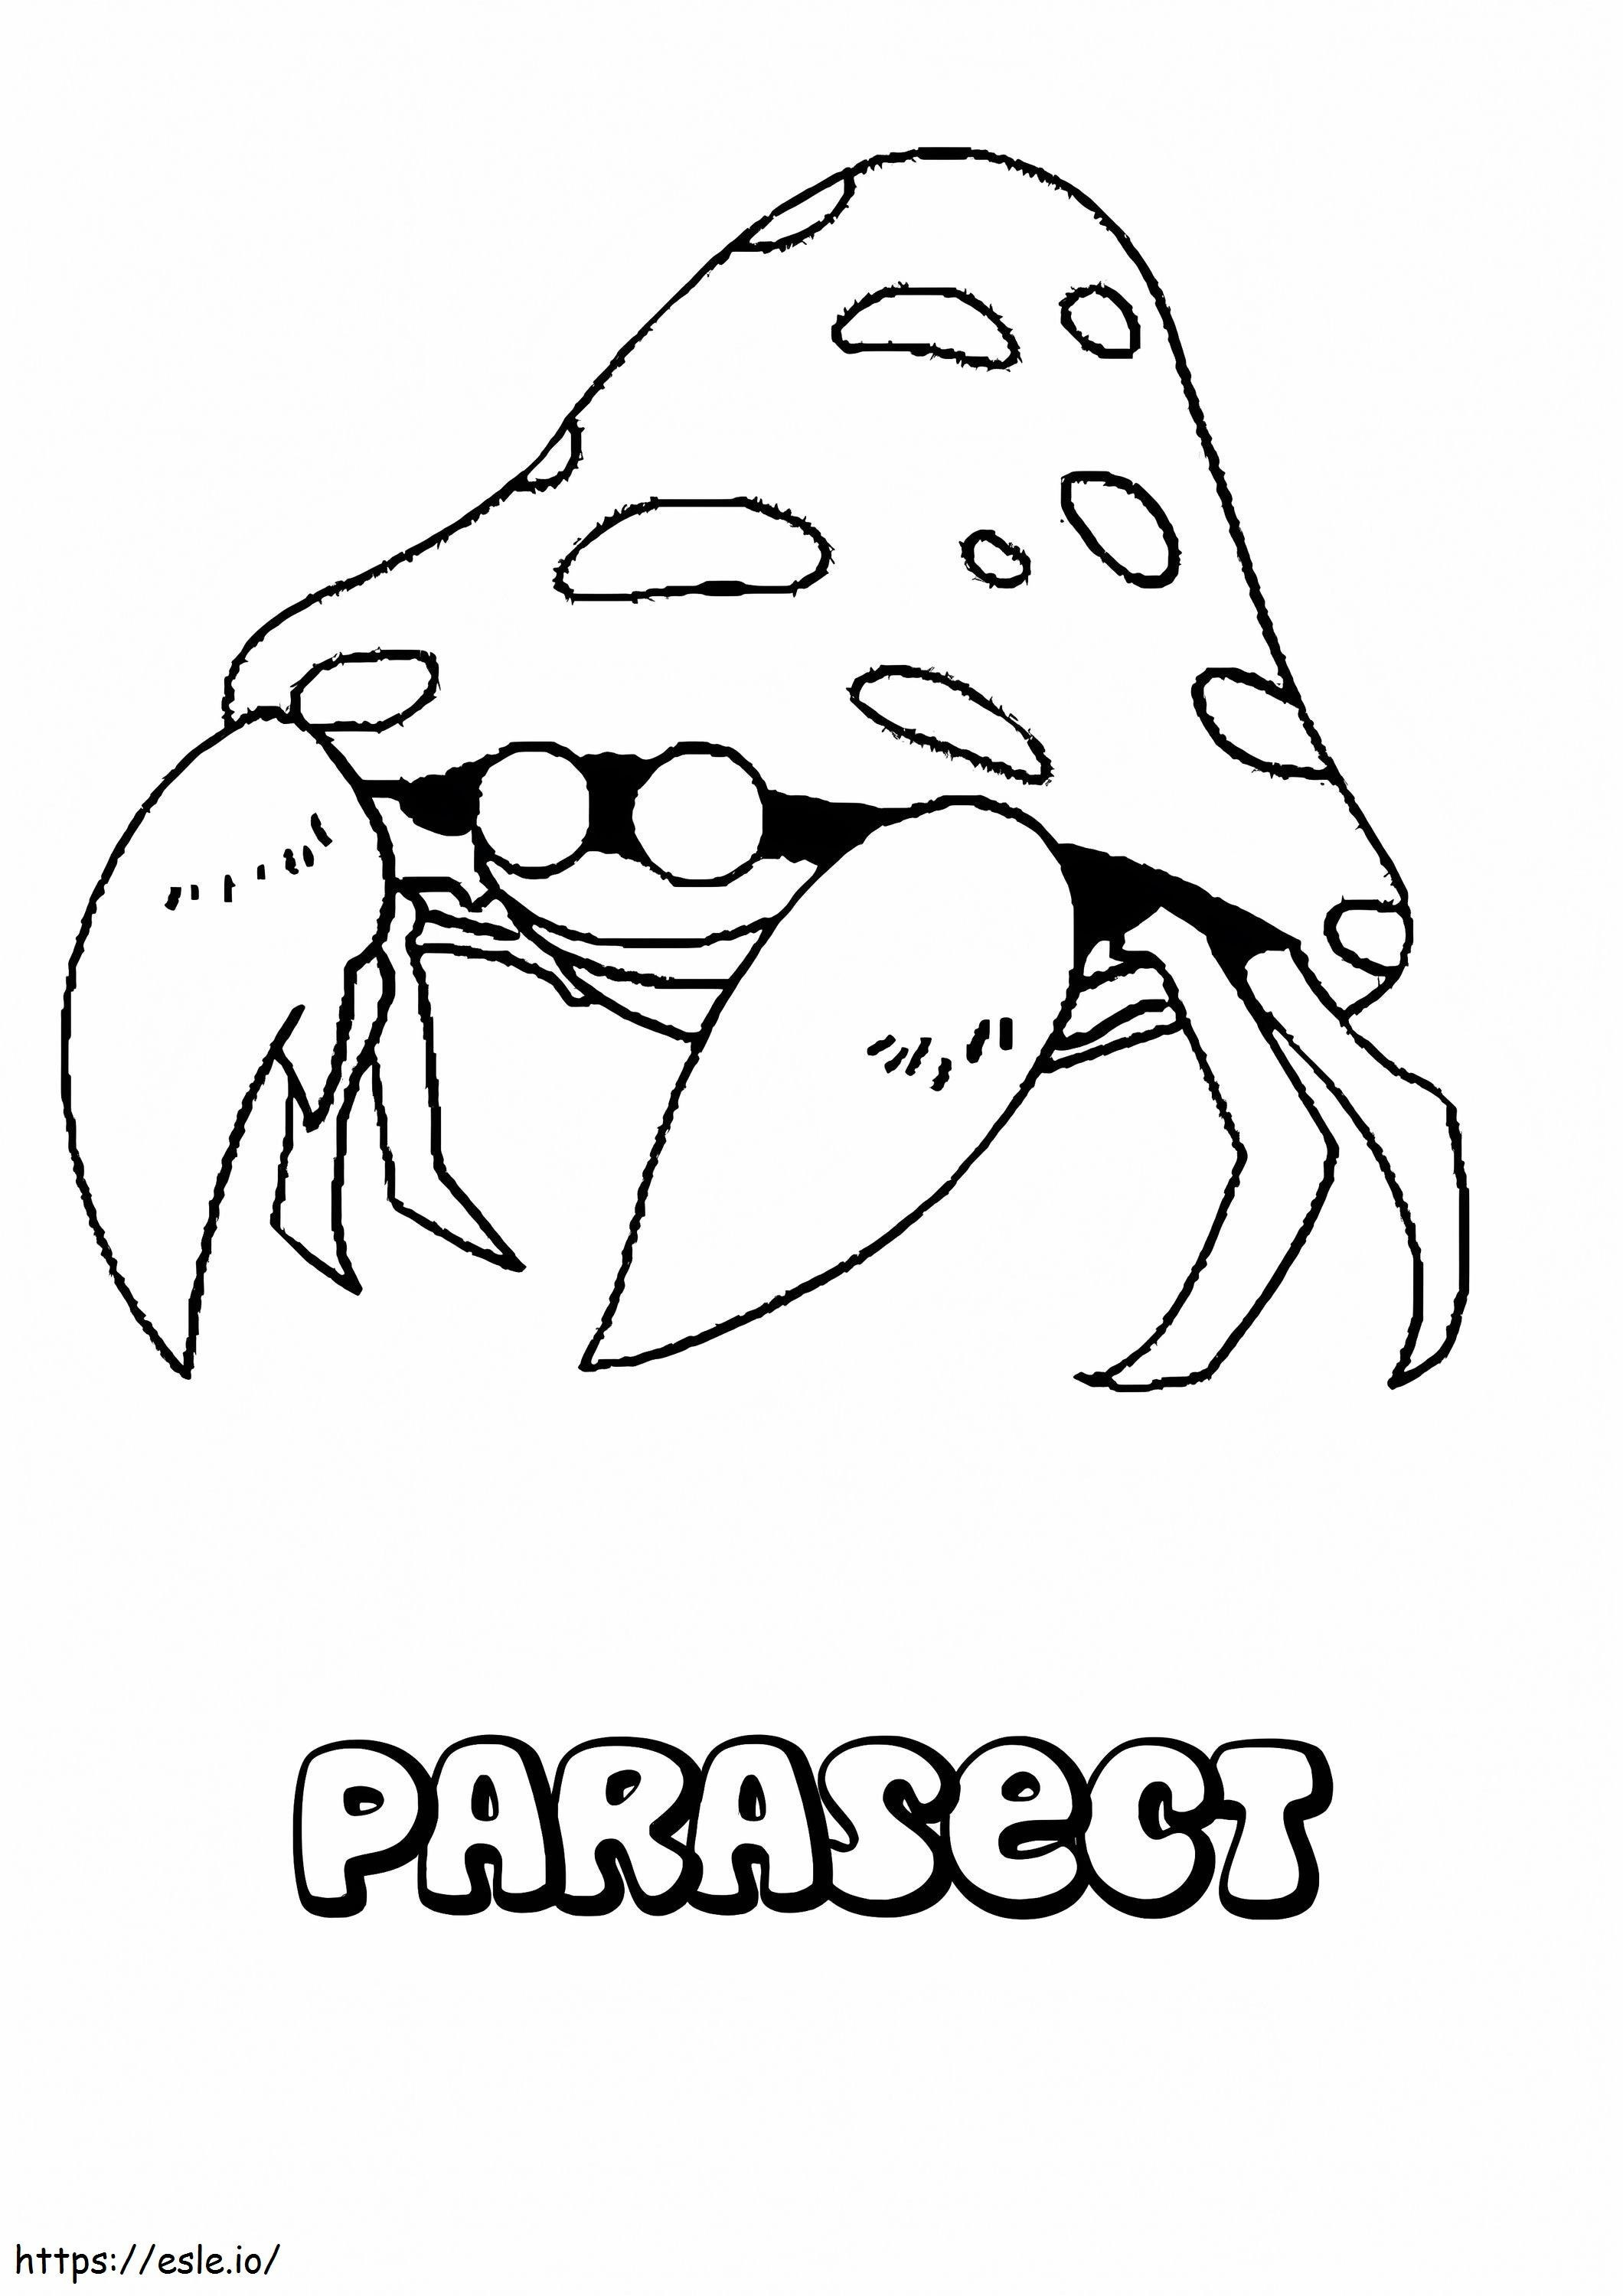 Coloriage Parasect, pas Pokémon à imprimer dessin